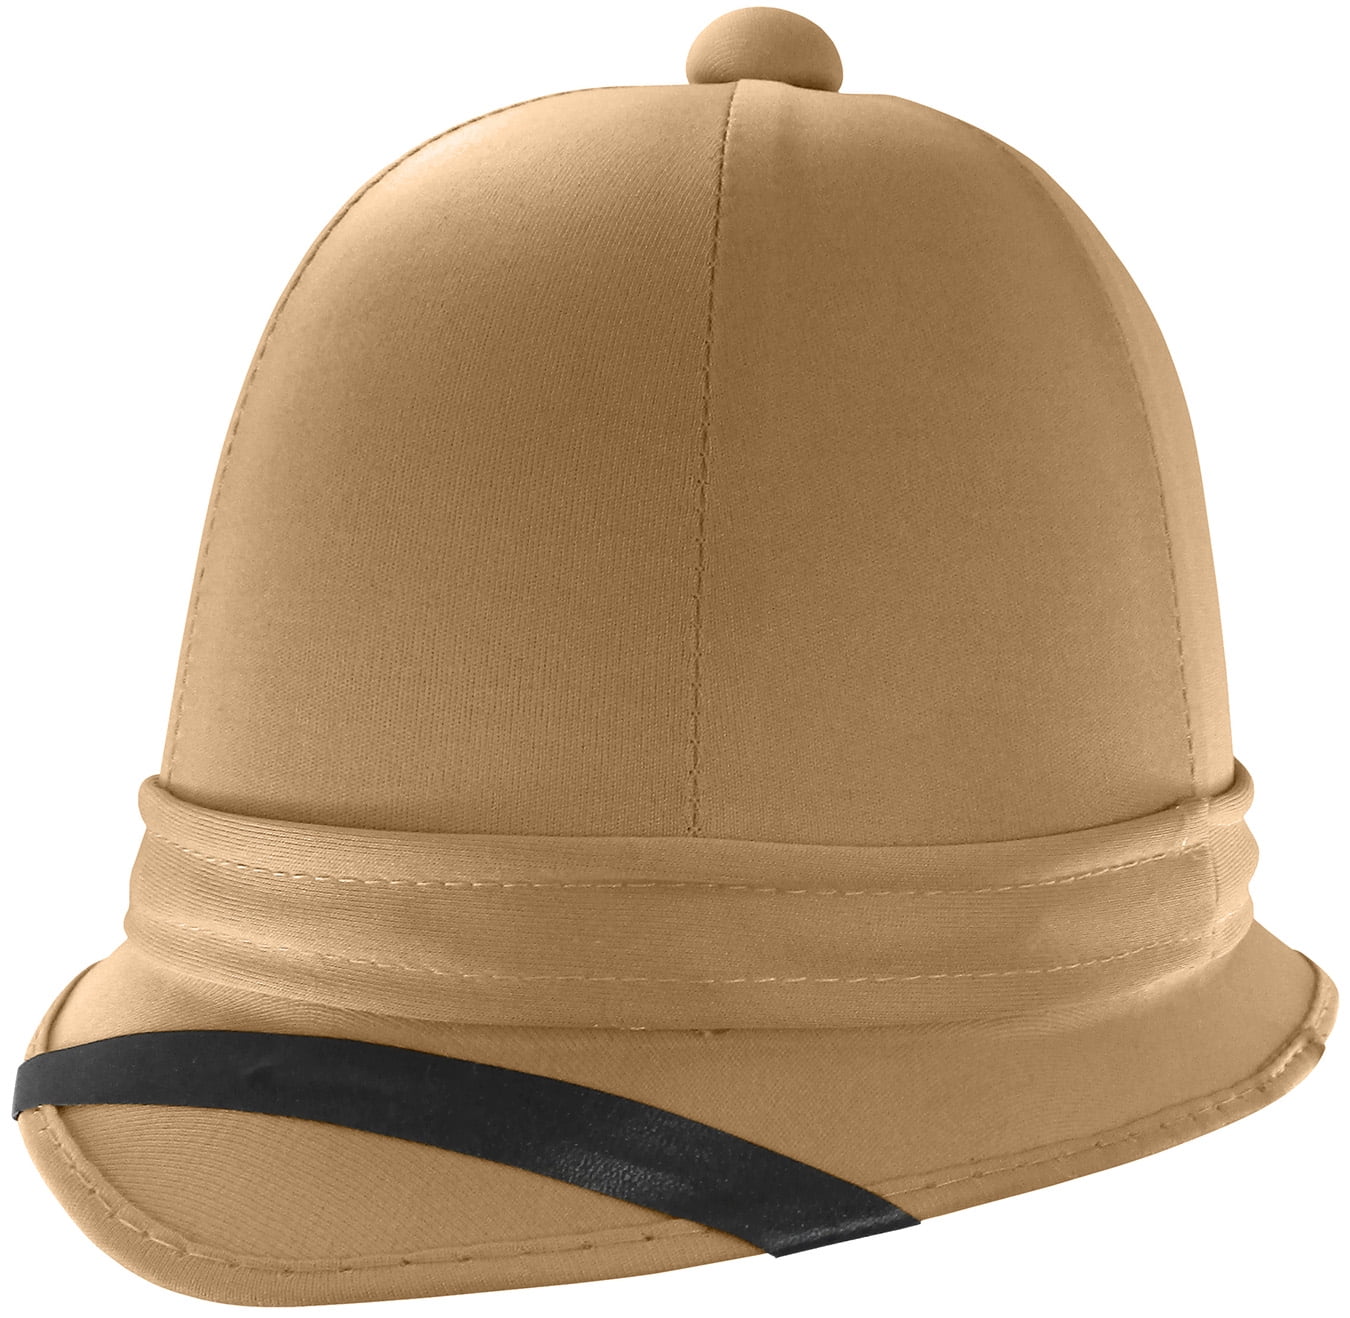 24pk Khaki Jungle Plastic Helmet Safari Hat Party Favors LOT 